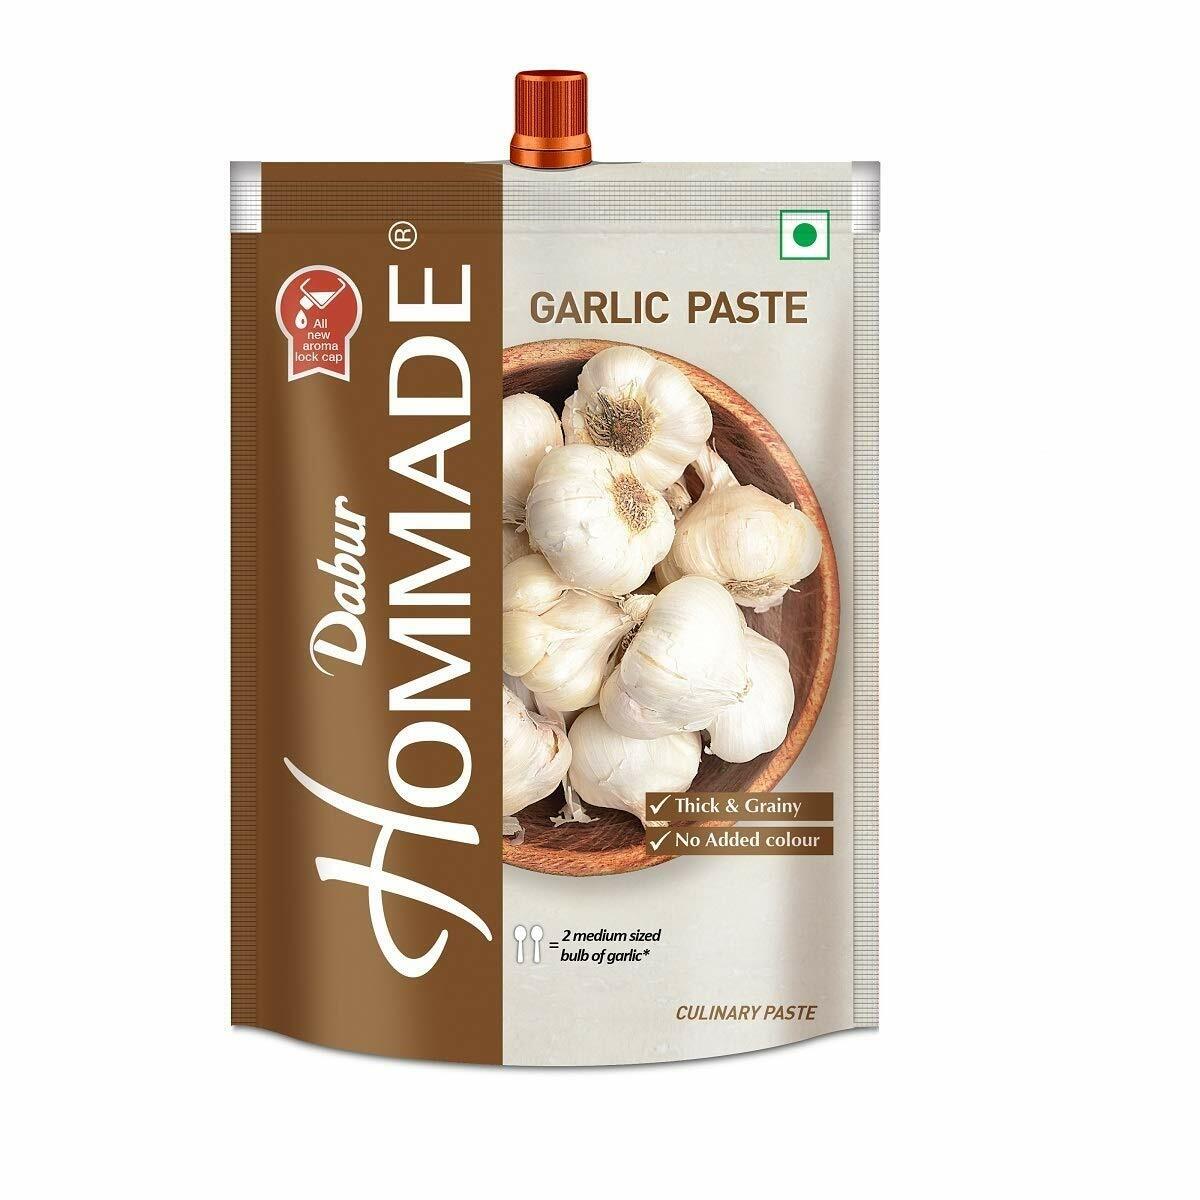 Hommade Garlic Paste 200g